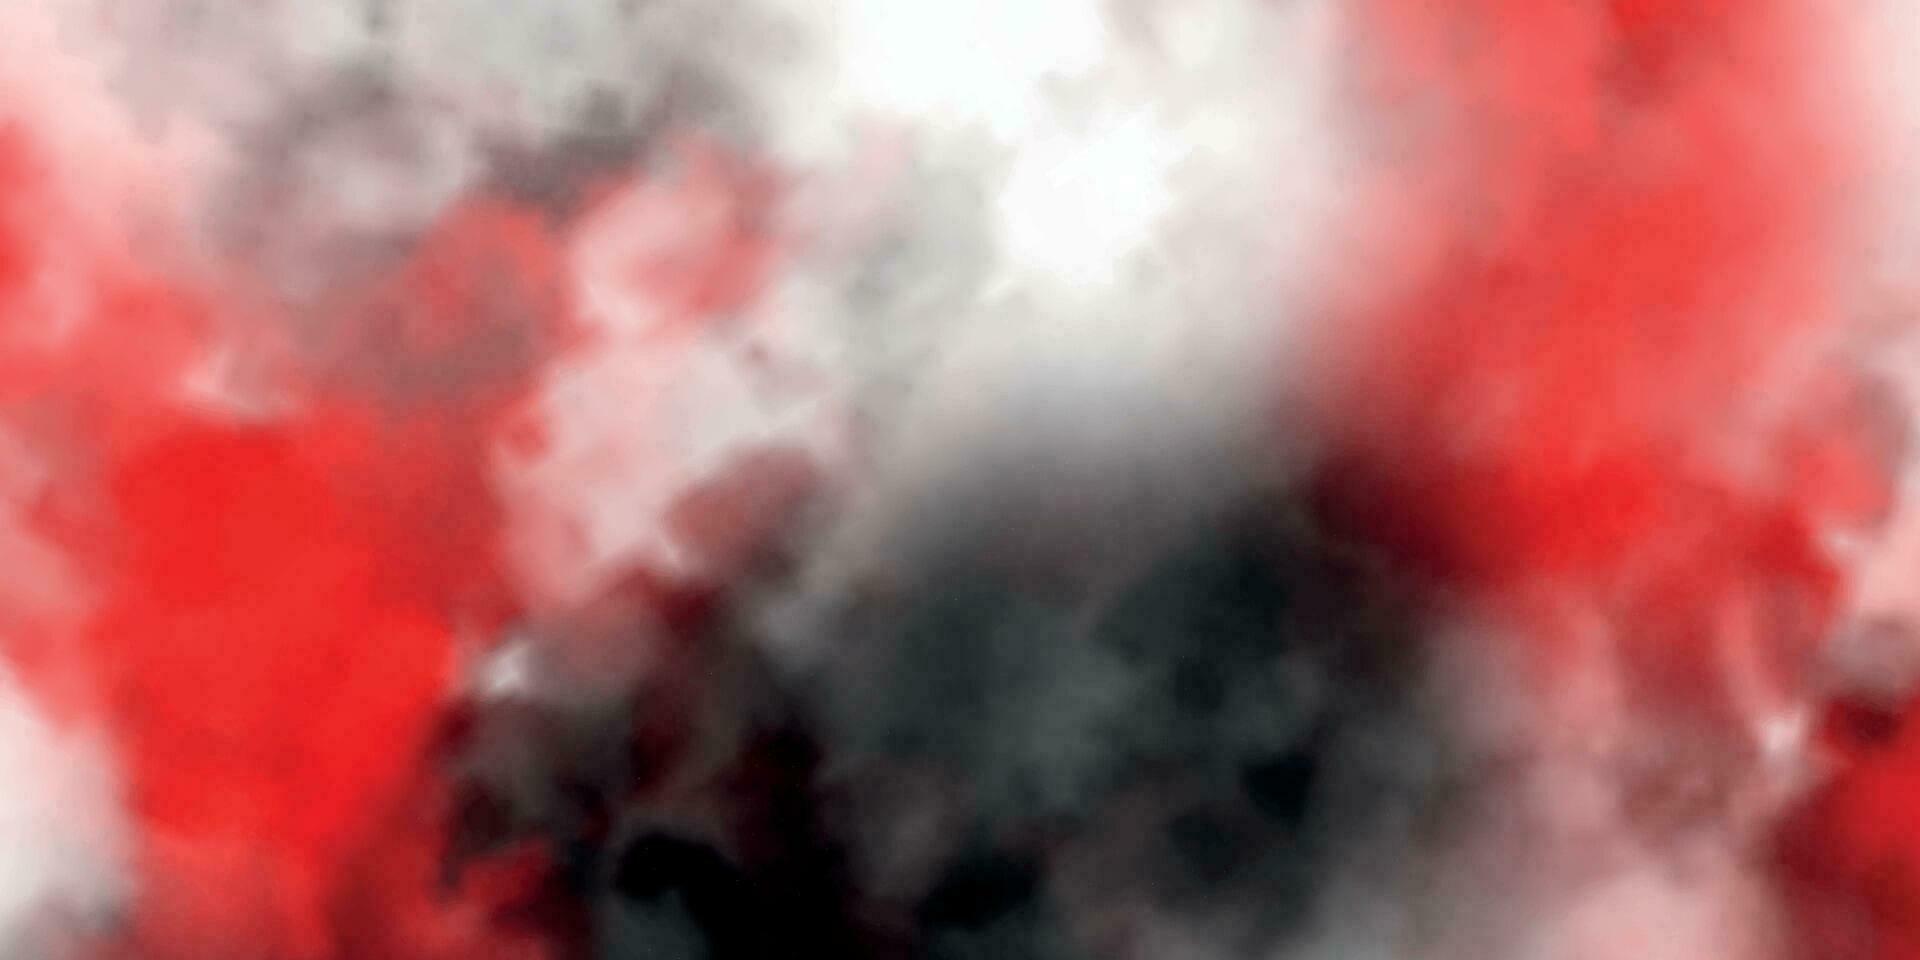 röd, svart, och vit bakgrund. abstrakt vattenfärg bakgrund. färgrik grunge textur vektor